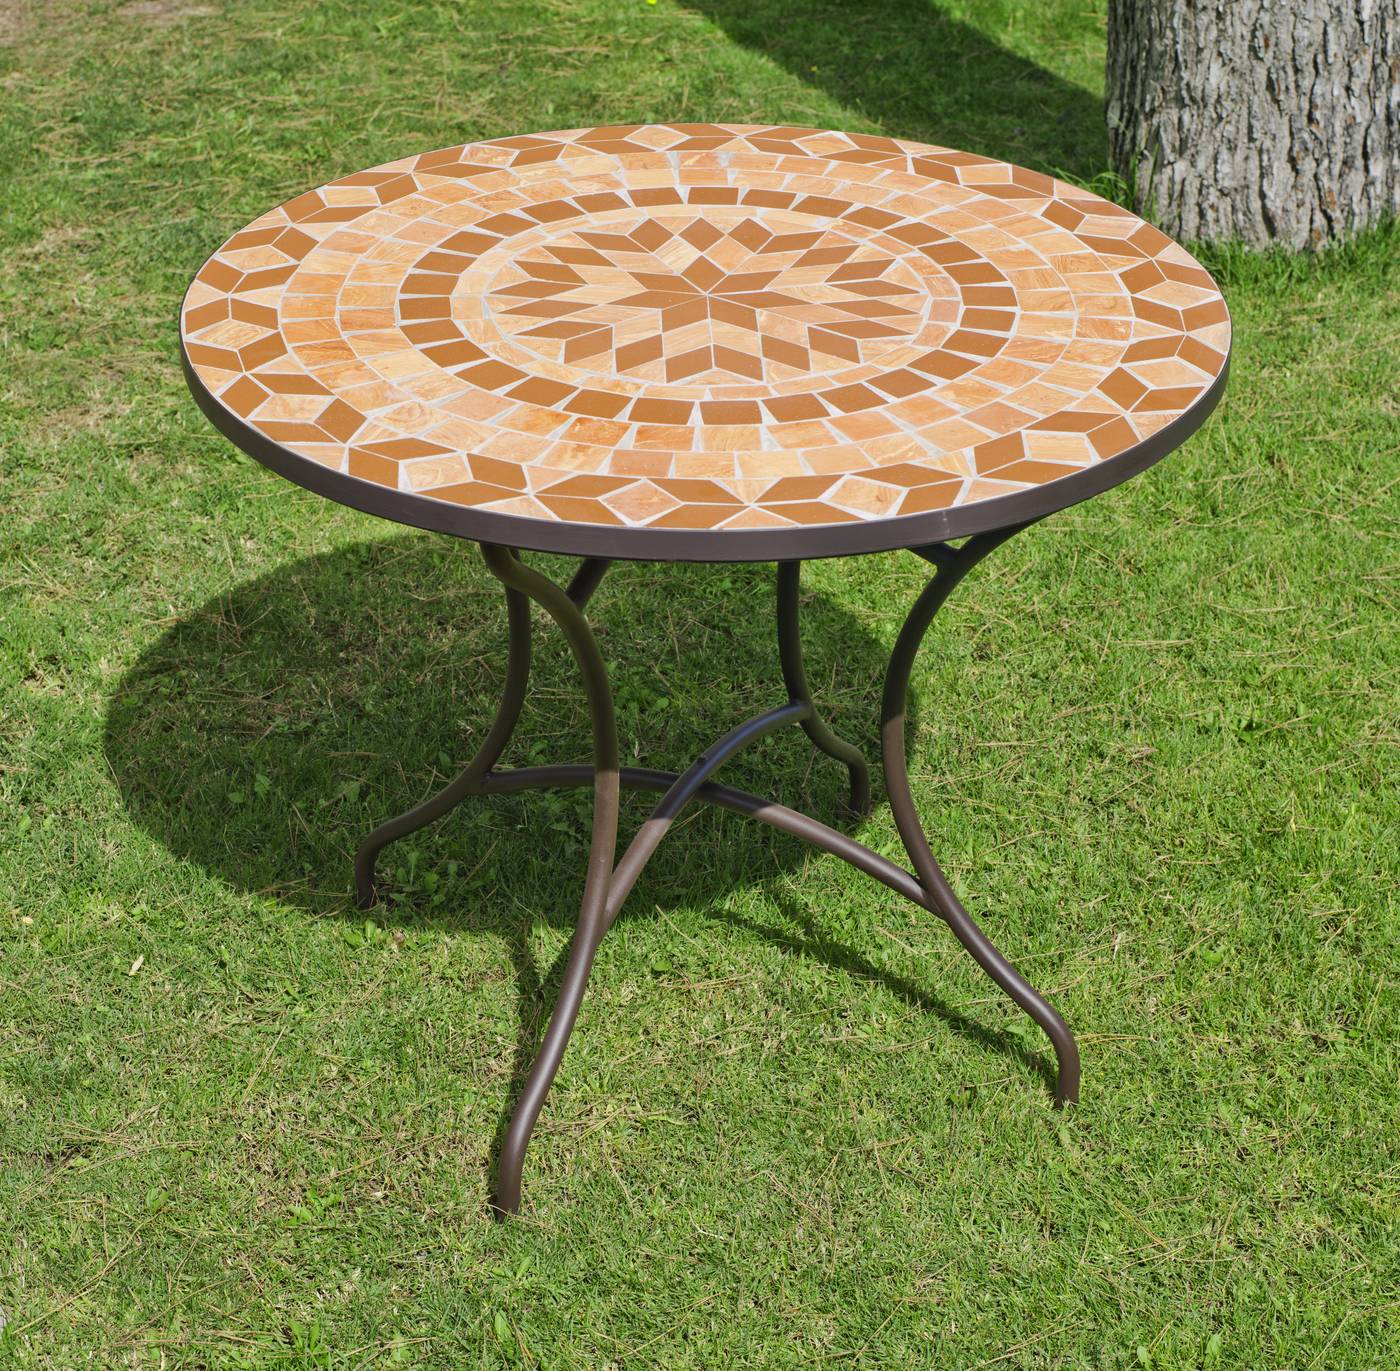 Conjunto Mosaico Priscila-Sevilla 90-4 - Conjunto de acero color bronce: 1 mesa de acero forjado, con tablero mosaico + 4 sillones de acero y ratán sintético